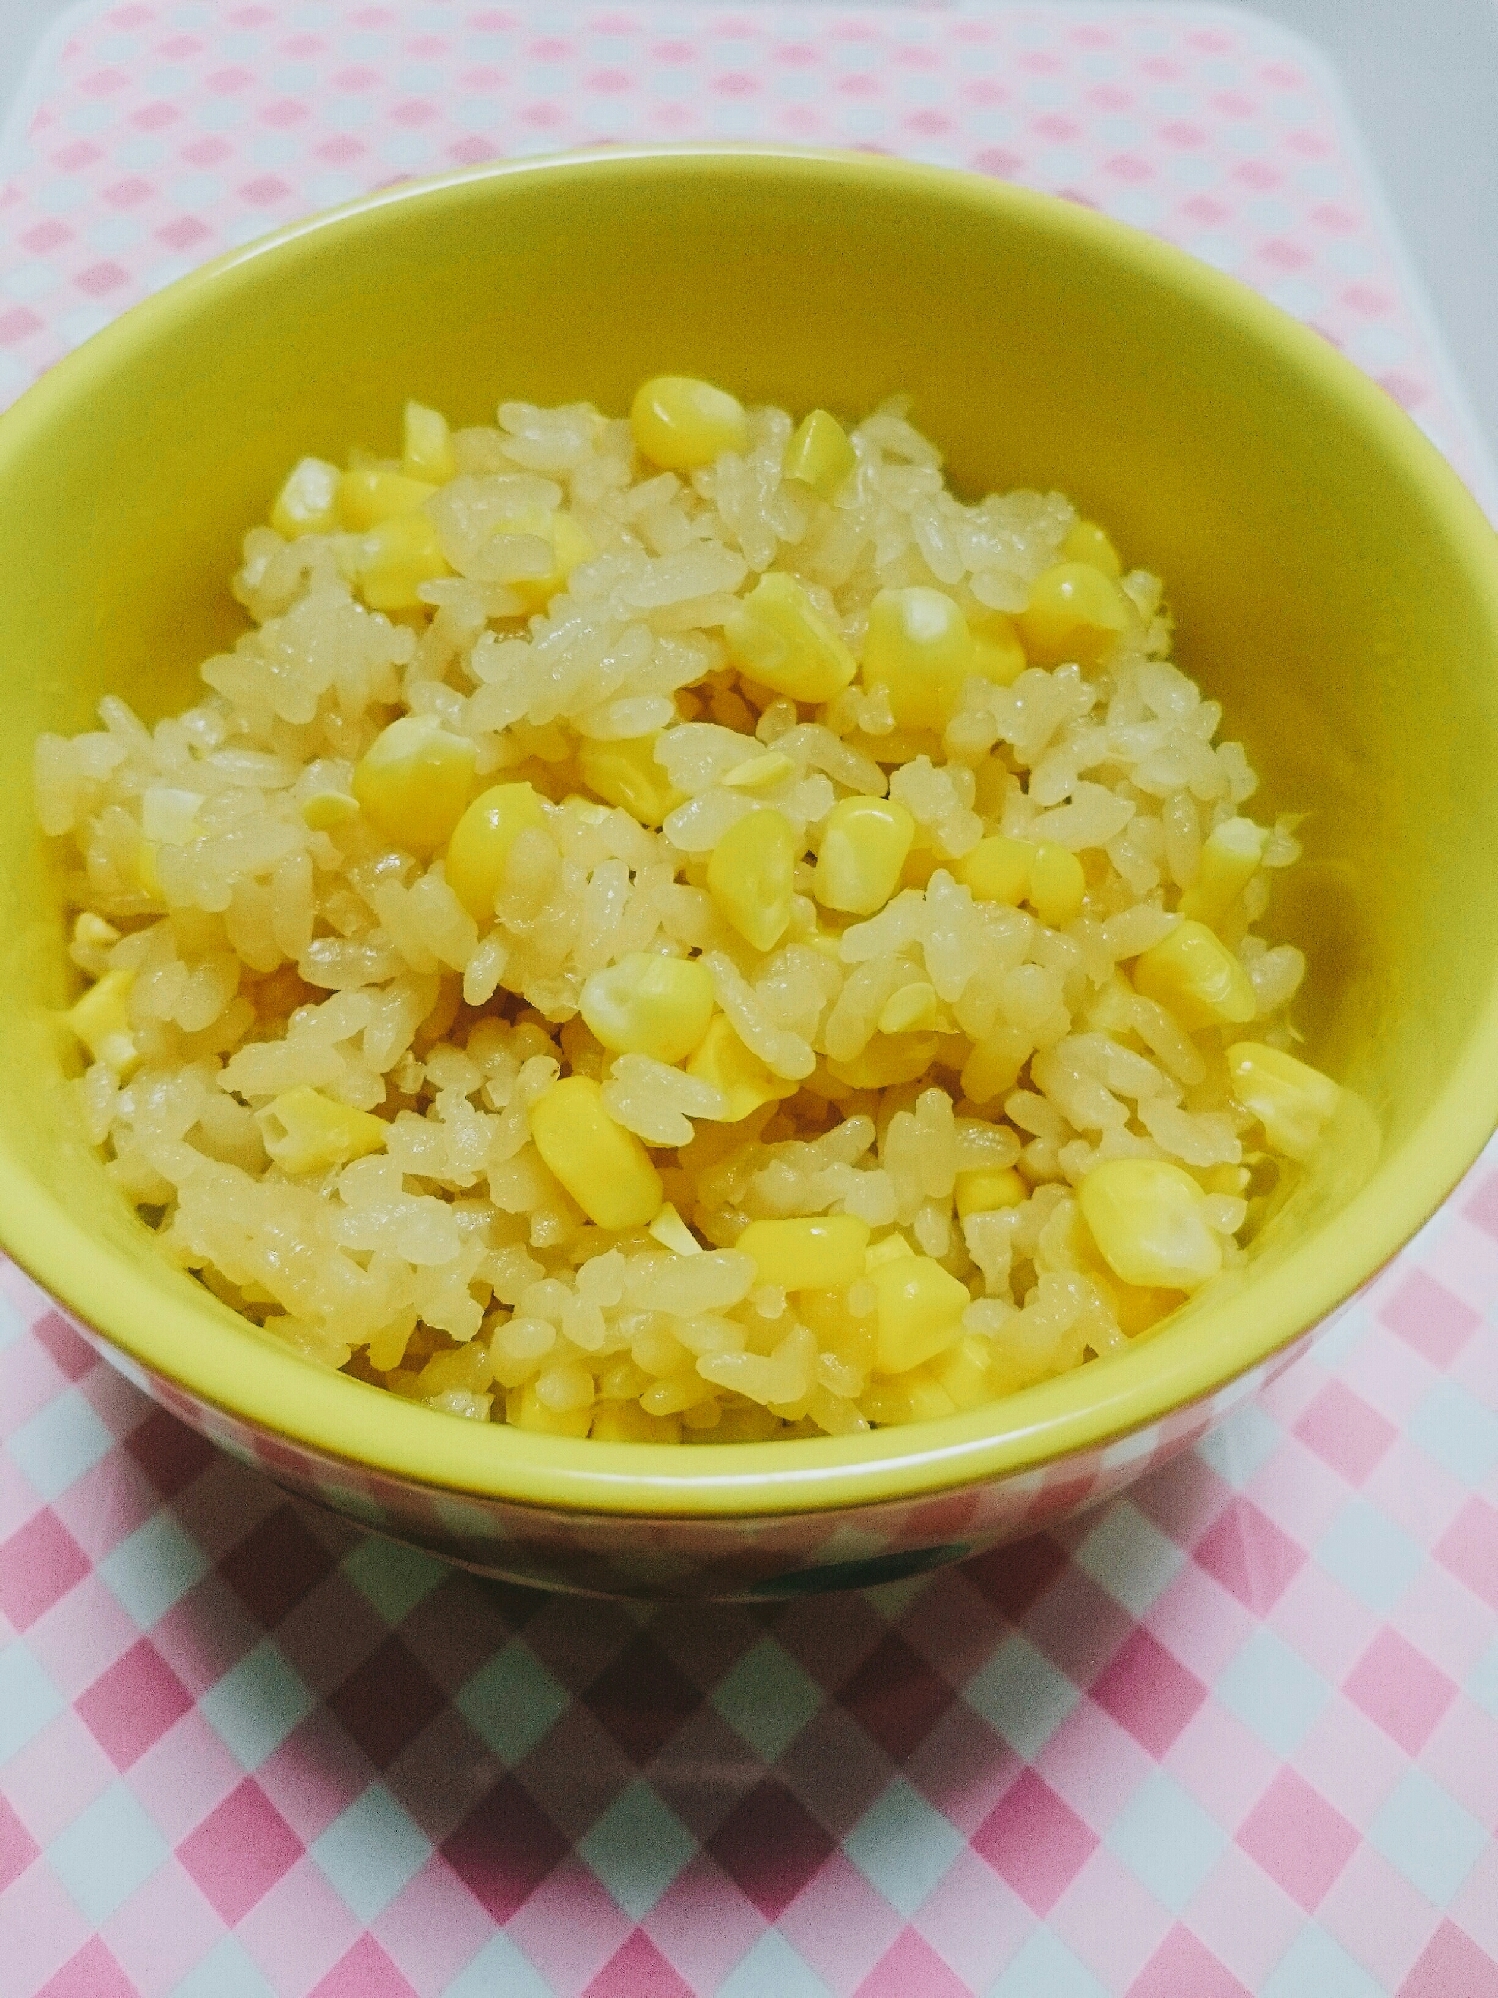 トウモロコシご飯(ฅ́˘ฅ̀)